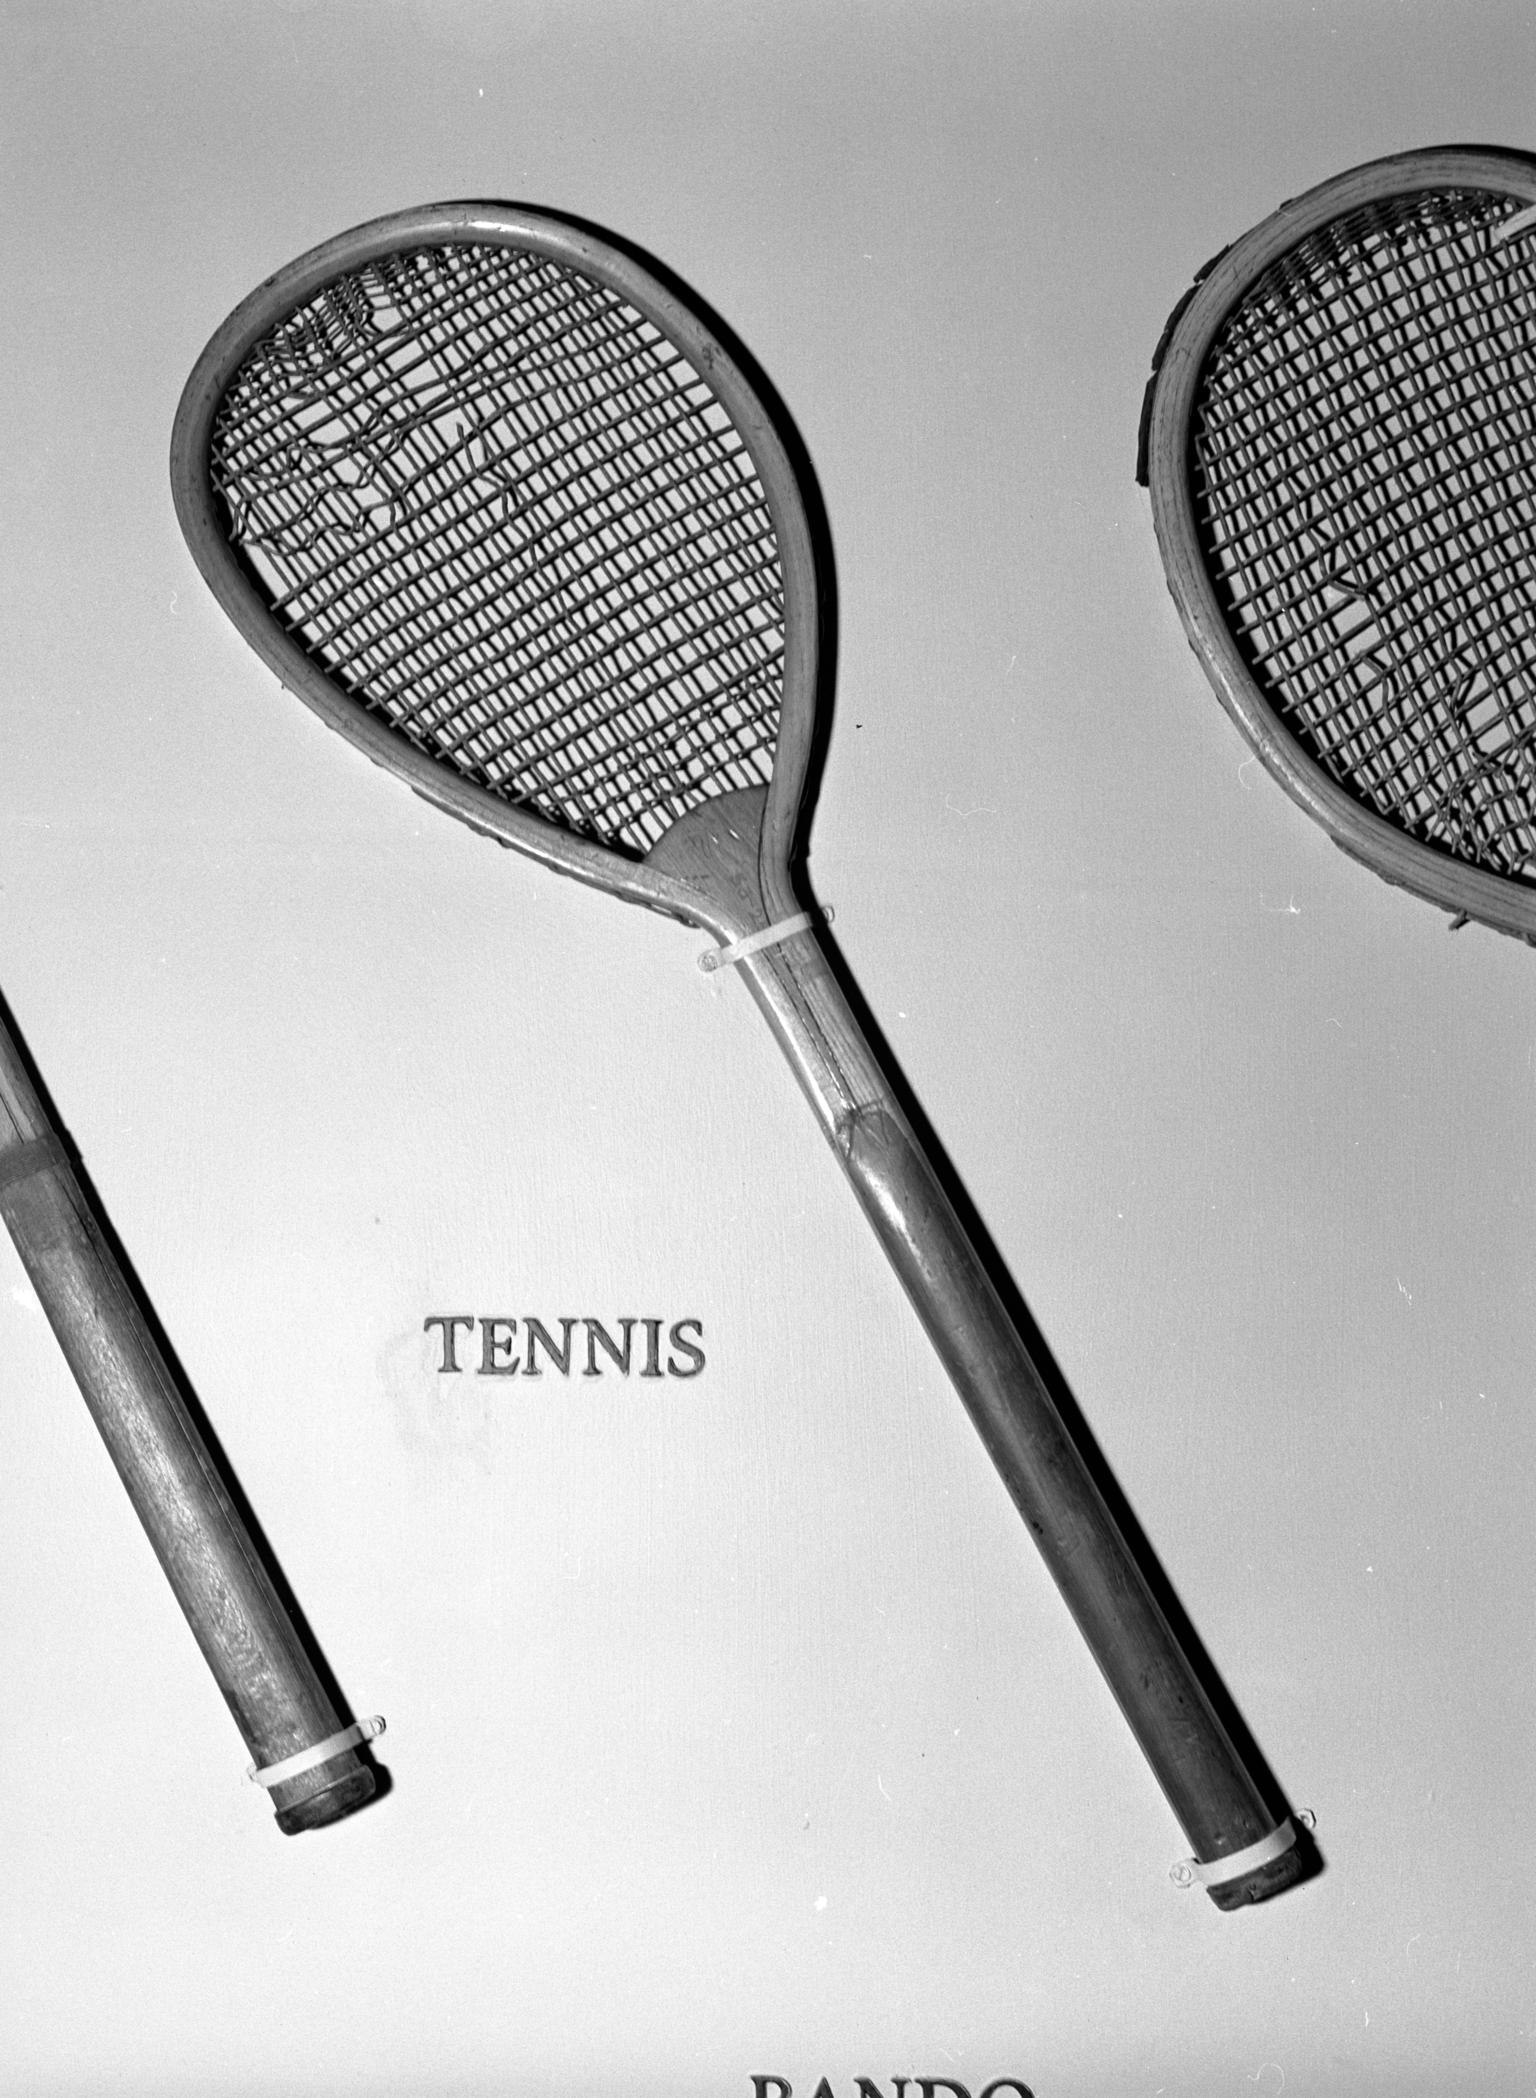 Real tennis racket